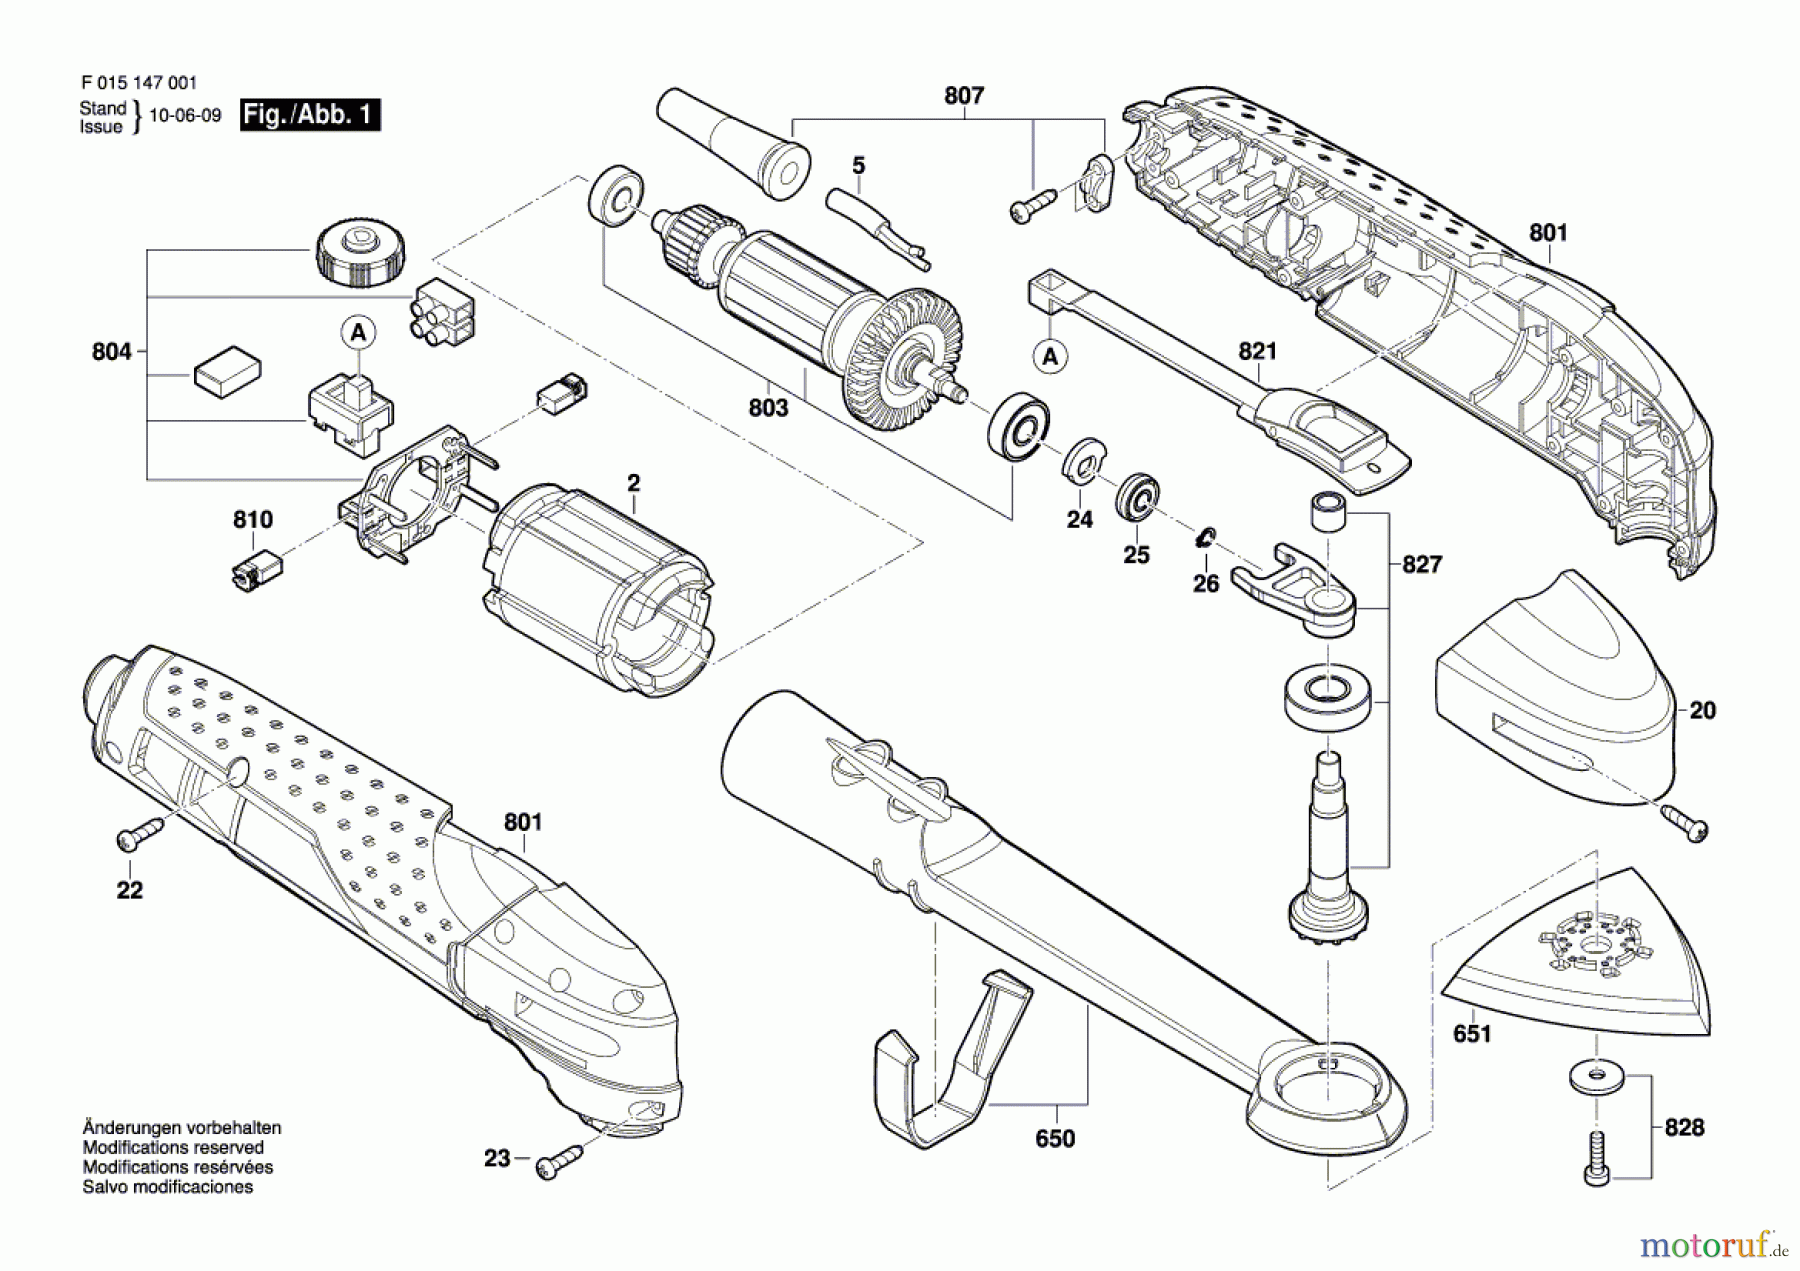  Bosch Werkzeug Multifunktionswerkzeug 1470 Seite 1